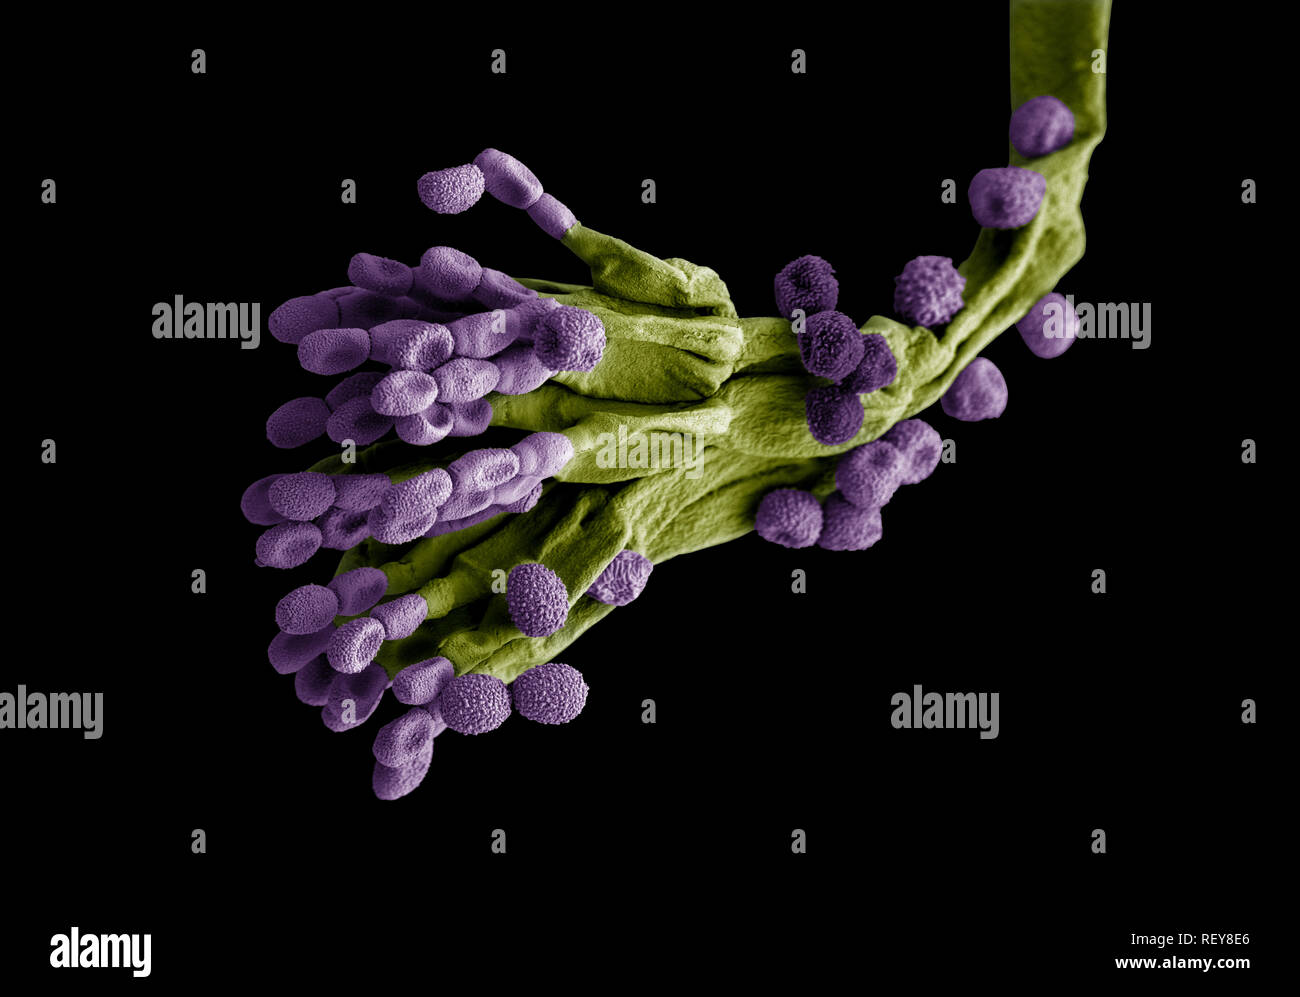 Penicillium fungus. Microscopic EM coloured image of penicillium chrysogenum fungus. Stock Photo